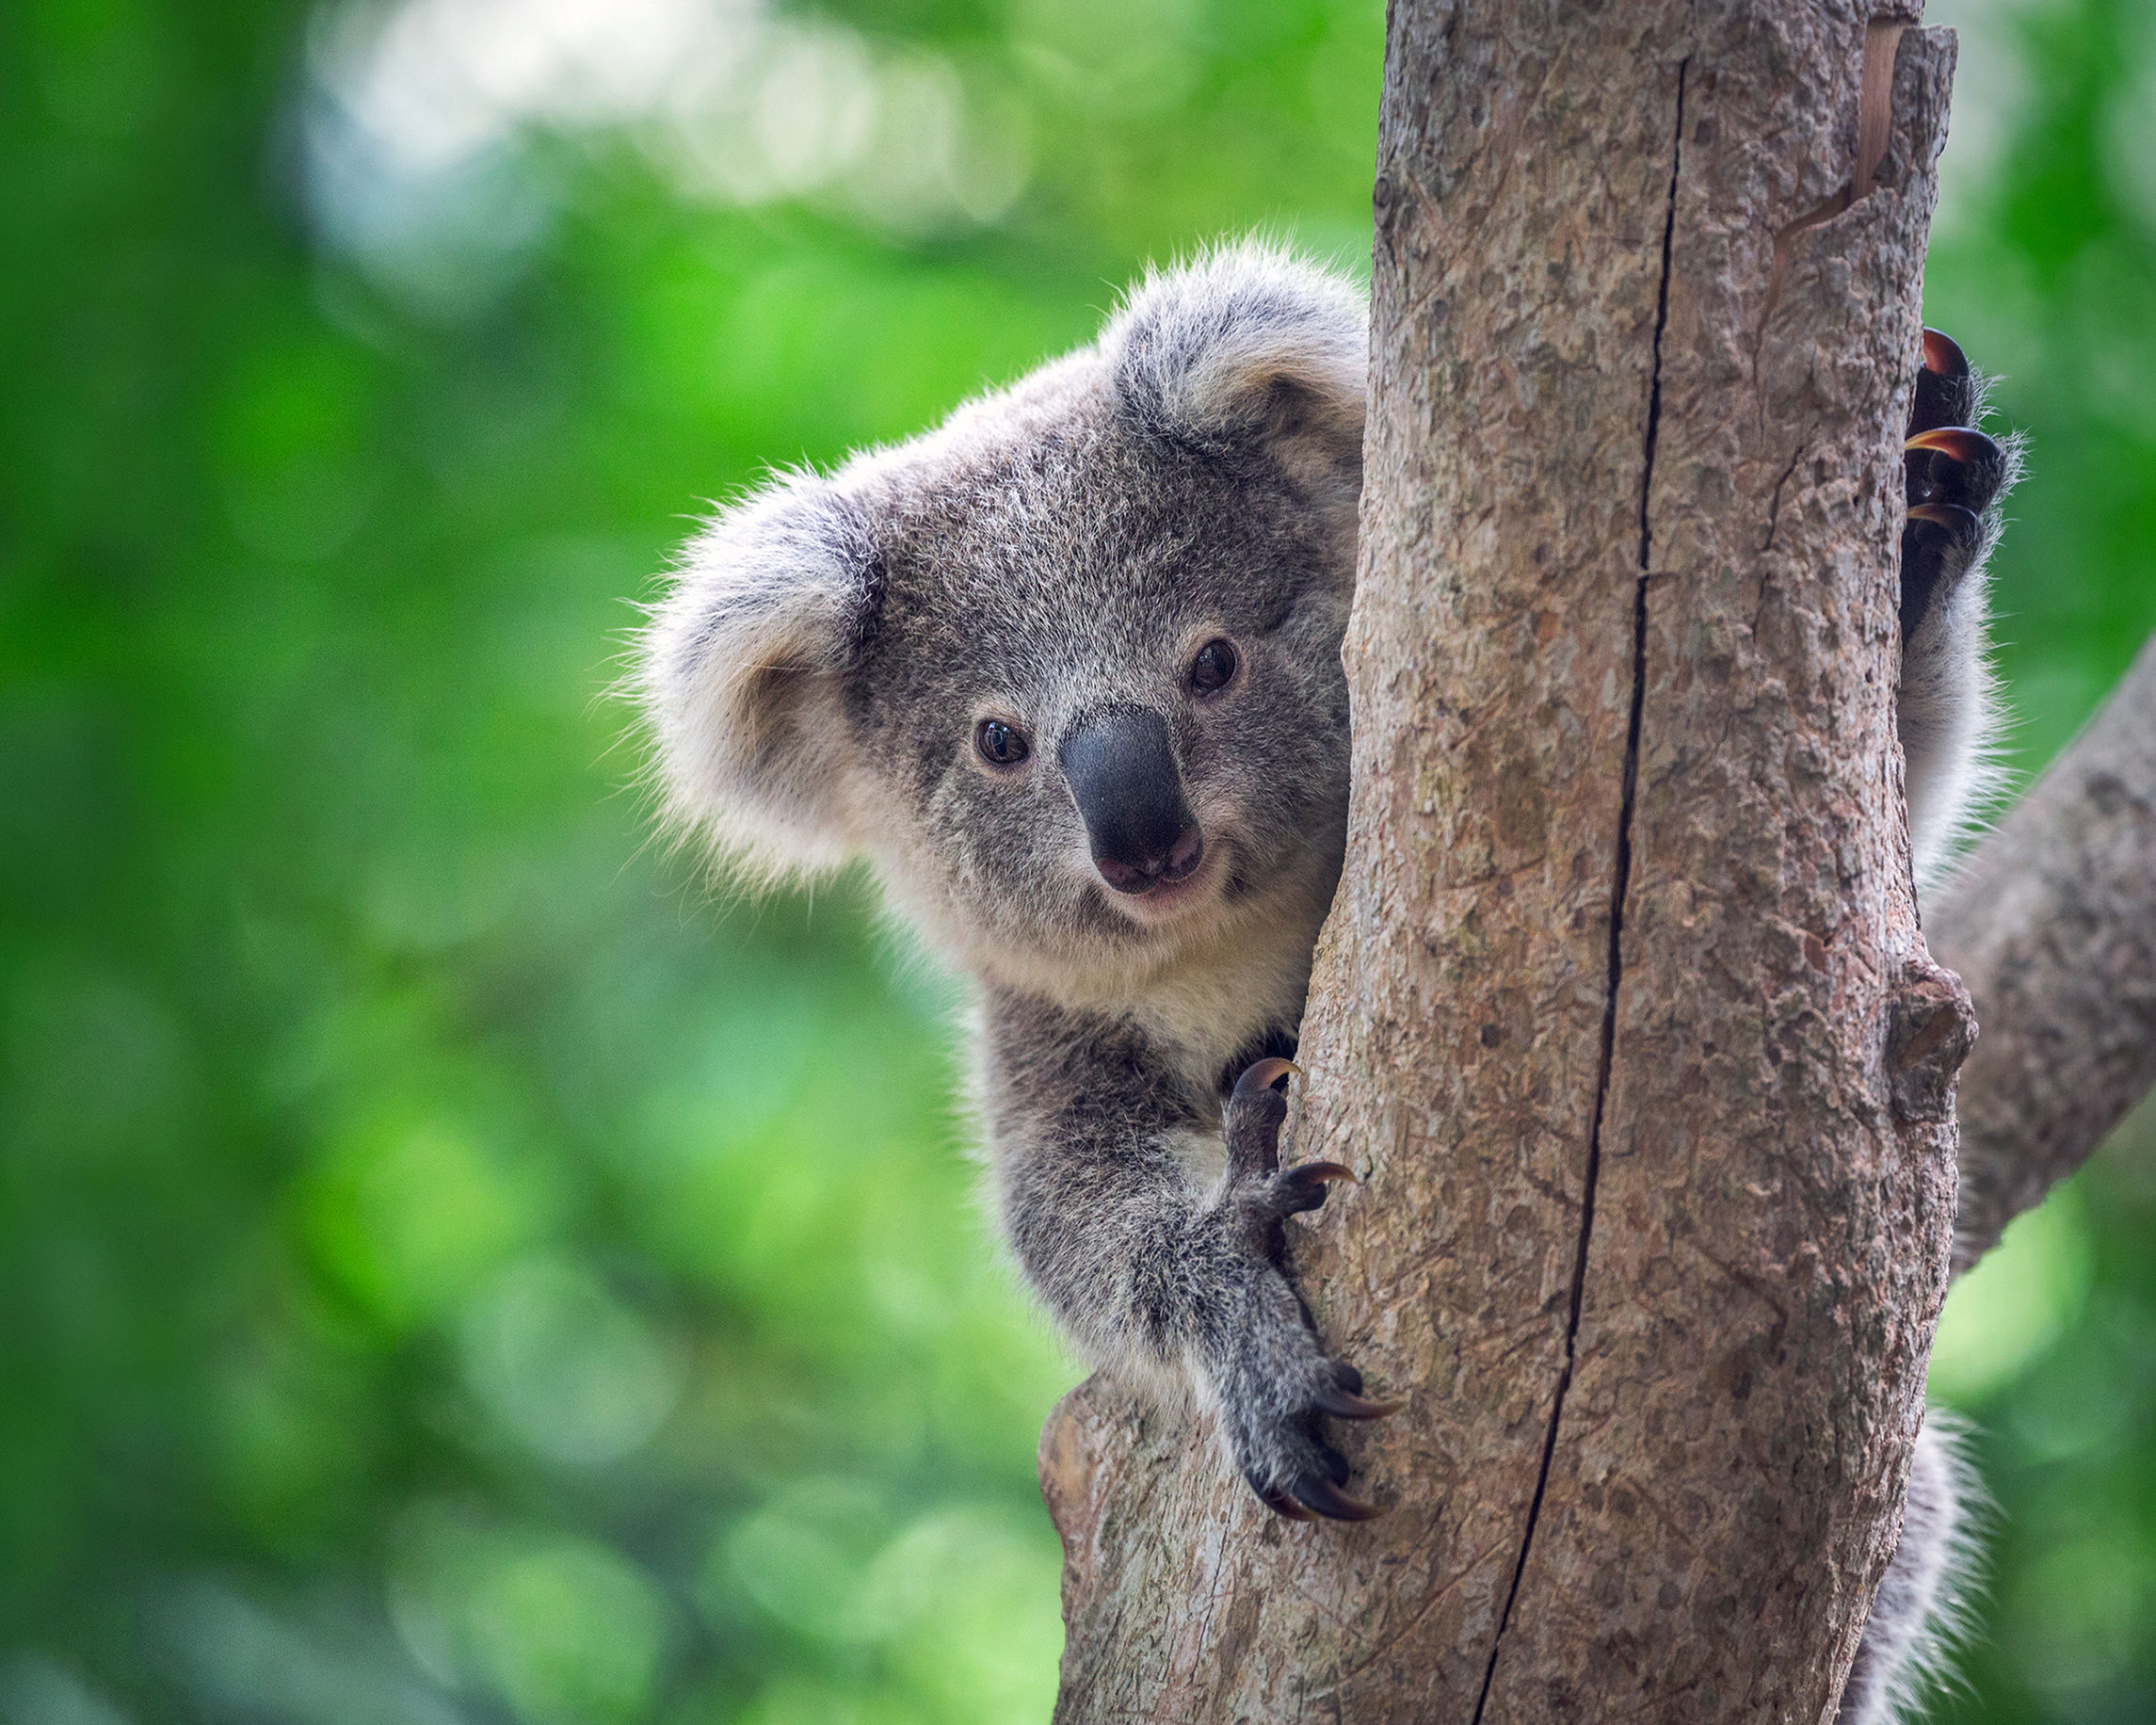 perche i koala abbracciano gli alberi